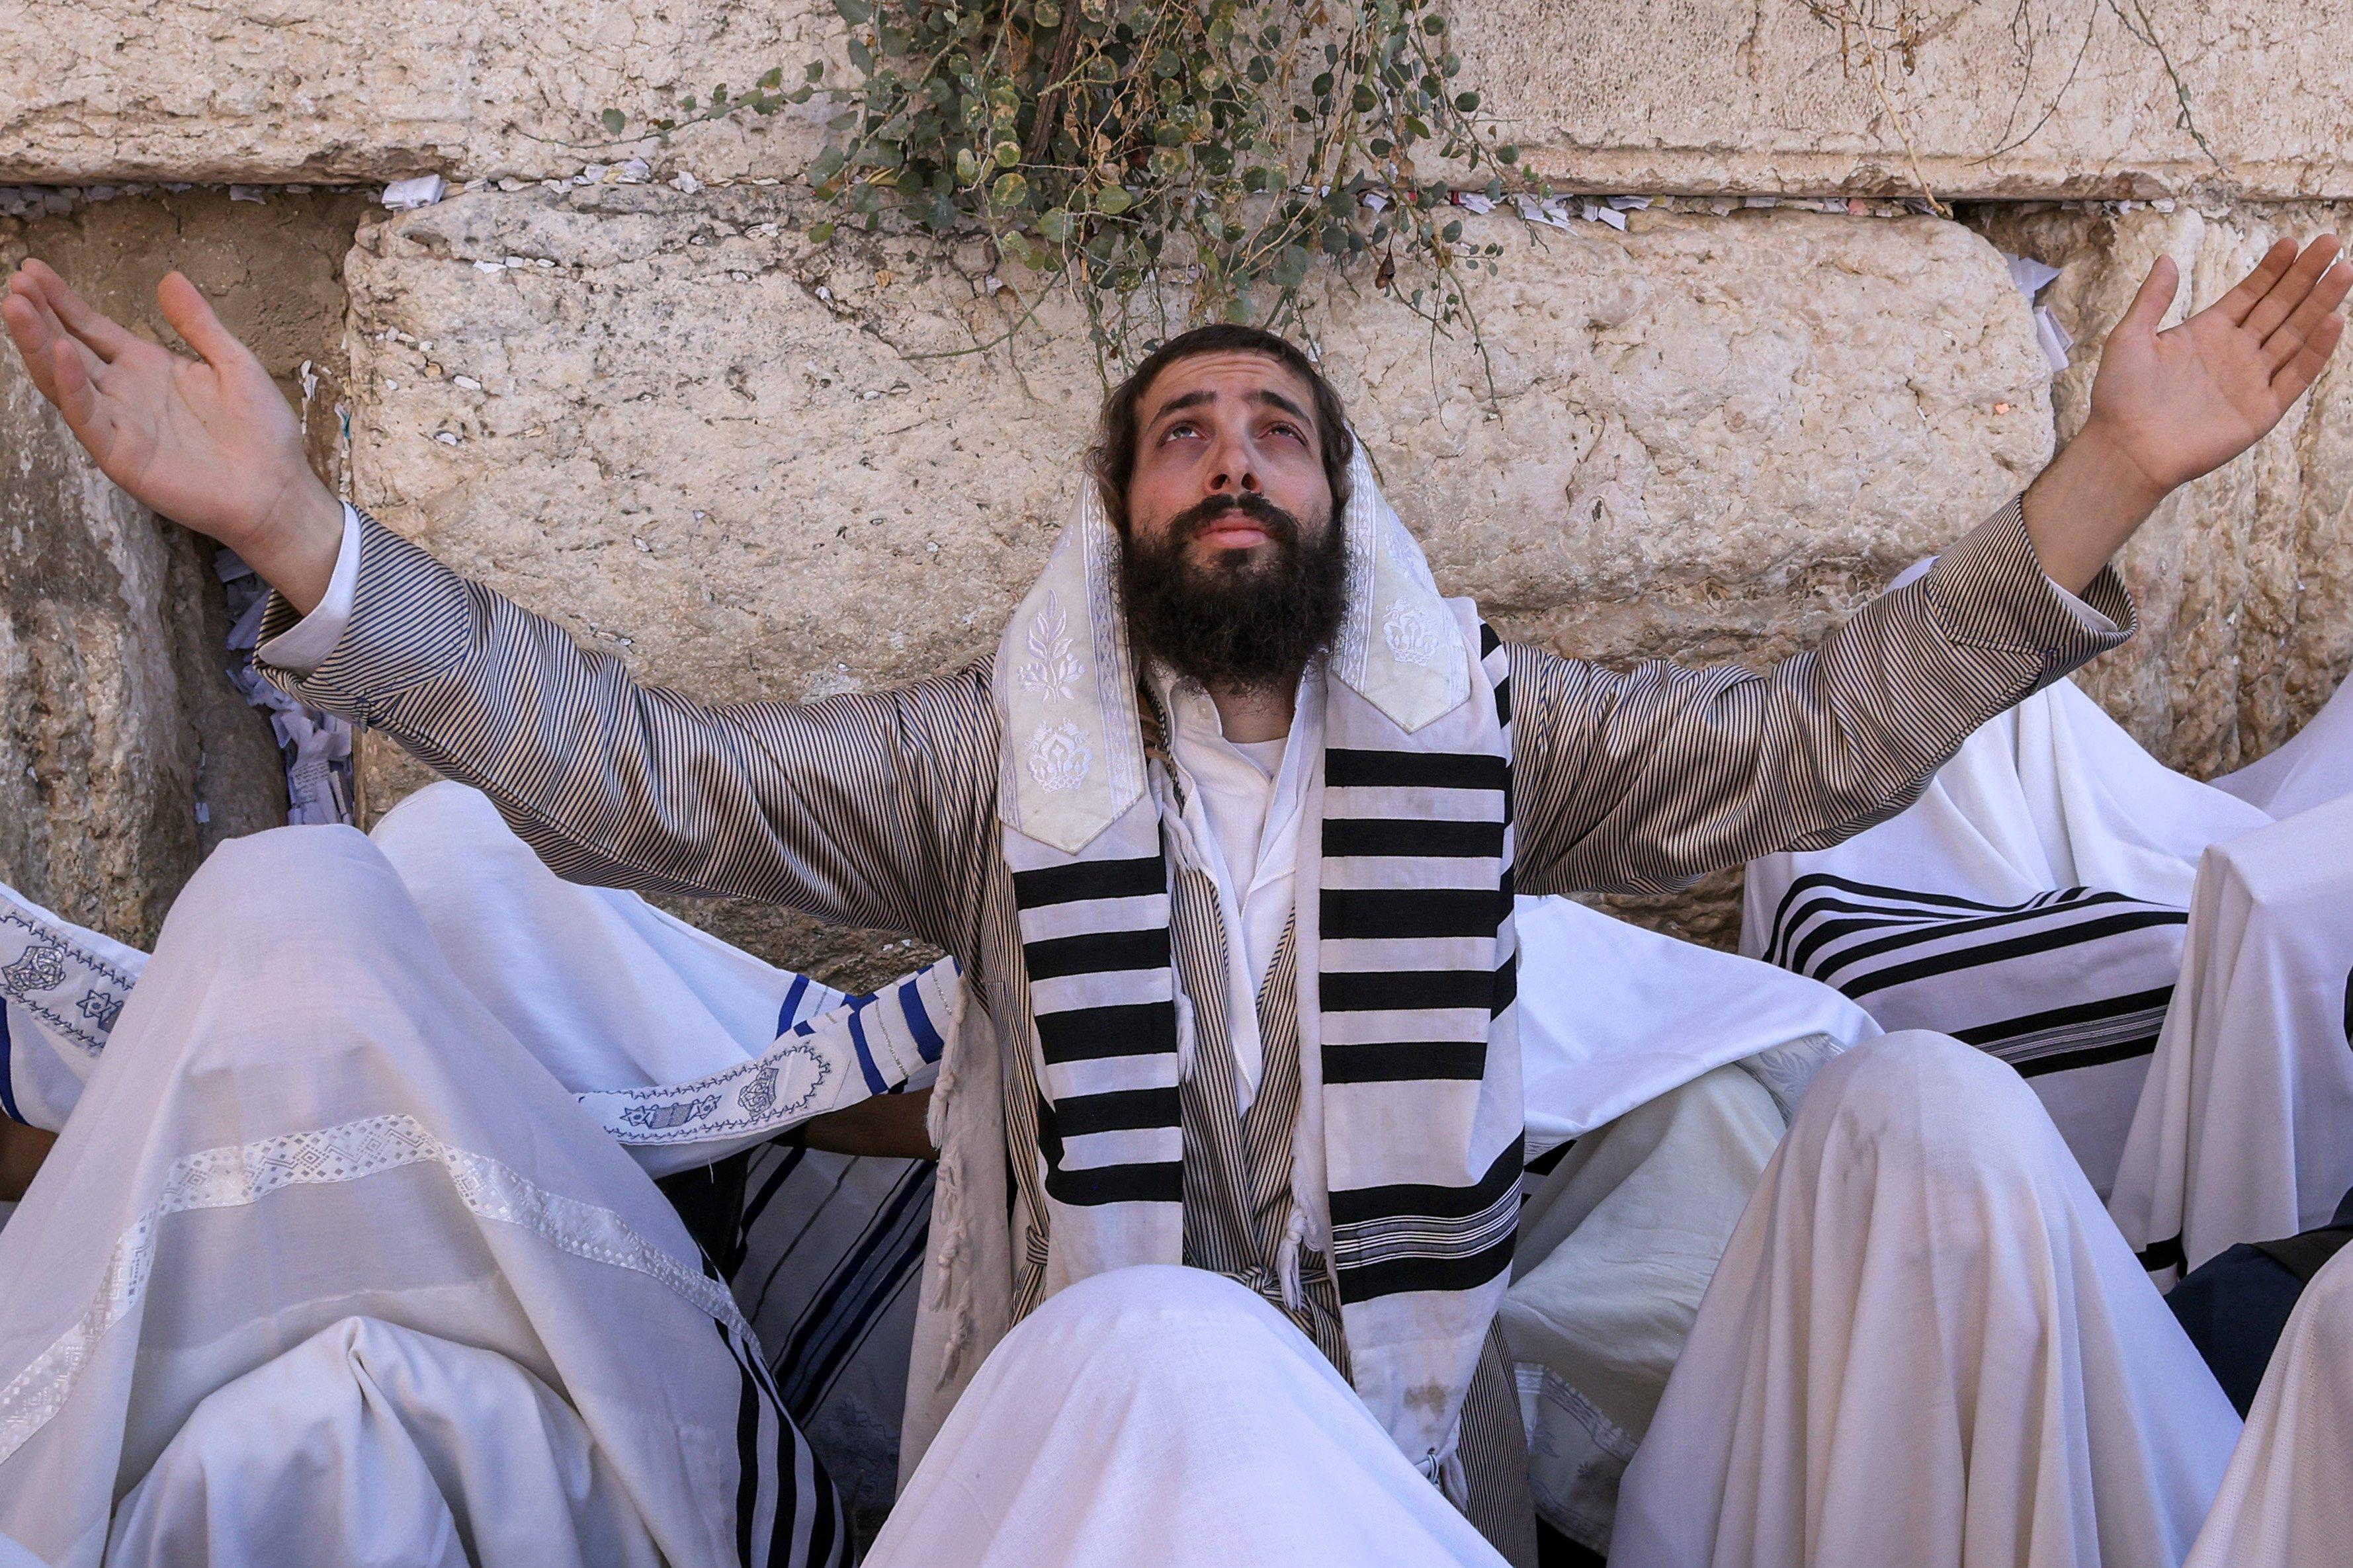 Żyd w ortodoksyjnym stroju, stojący wśrod innych Żydów ortodoksyjnych, podnosi ręce w geście modlitwy na tle muru